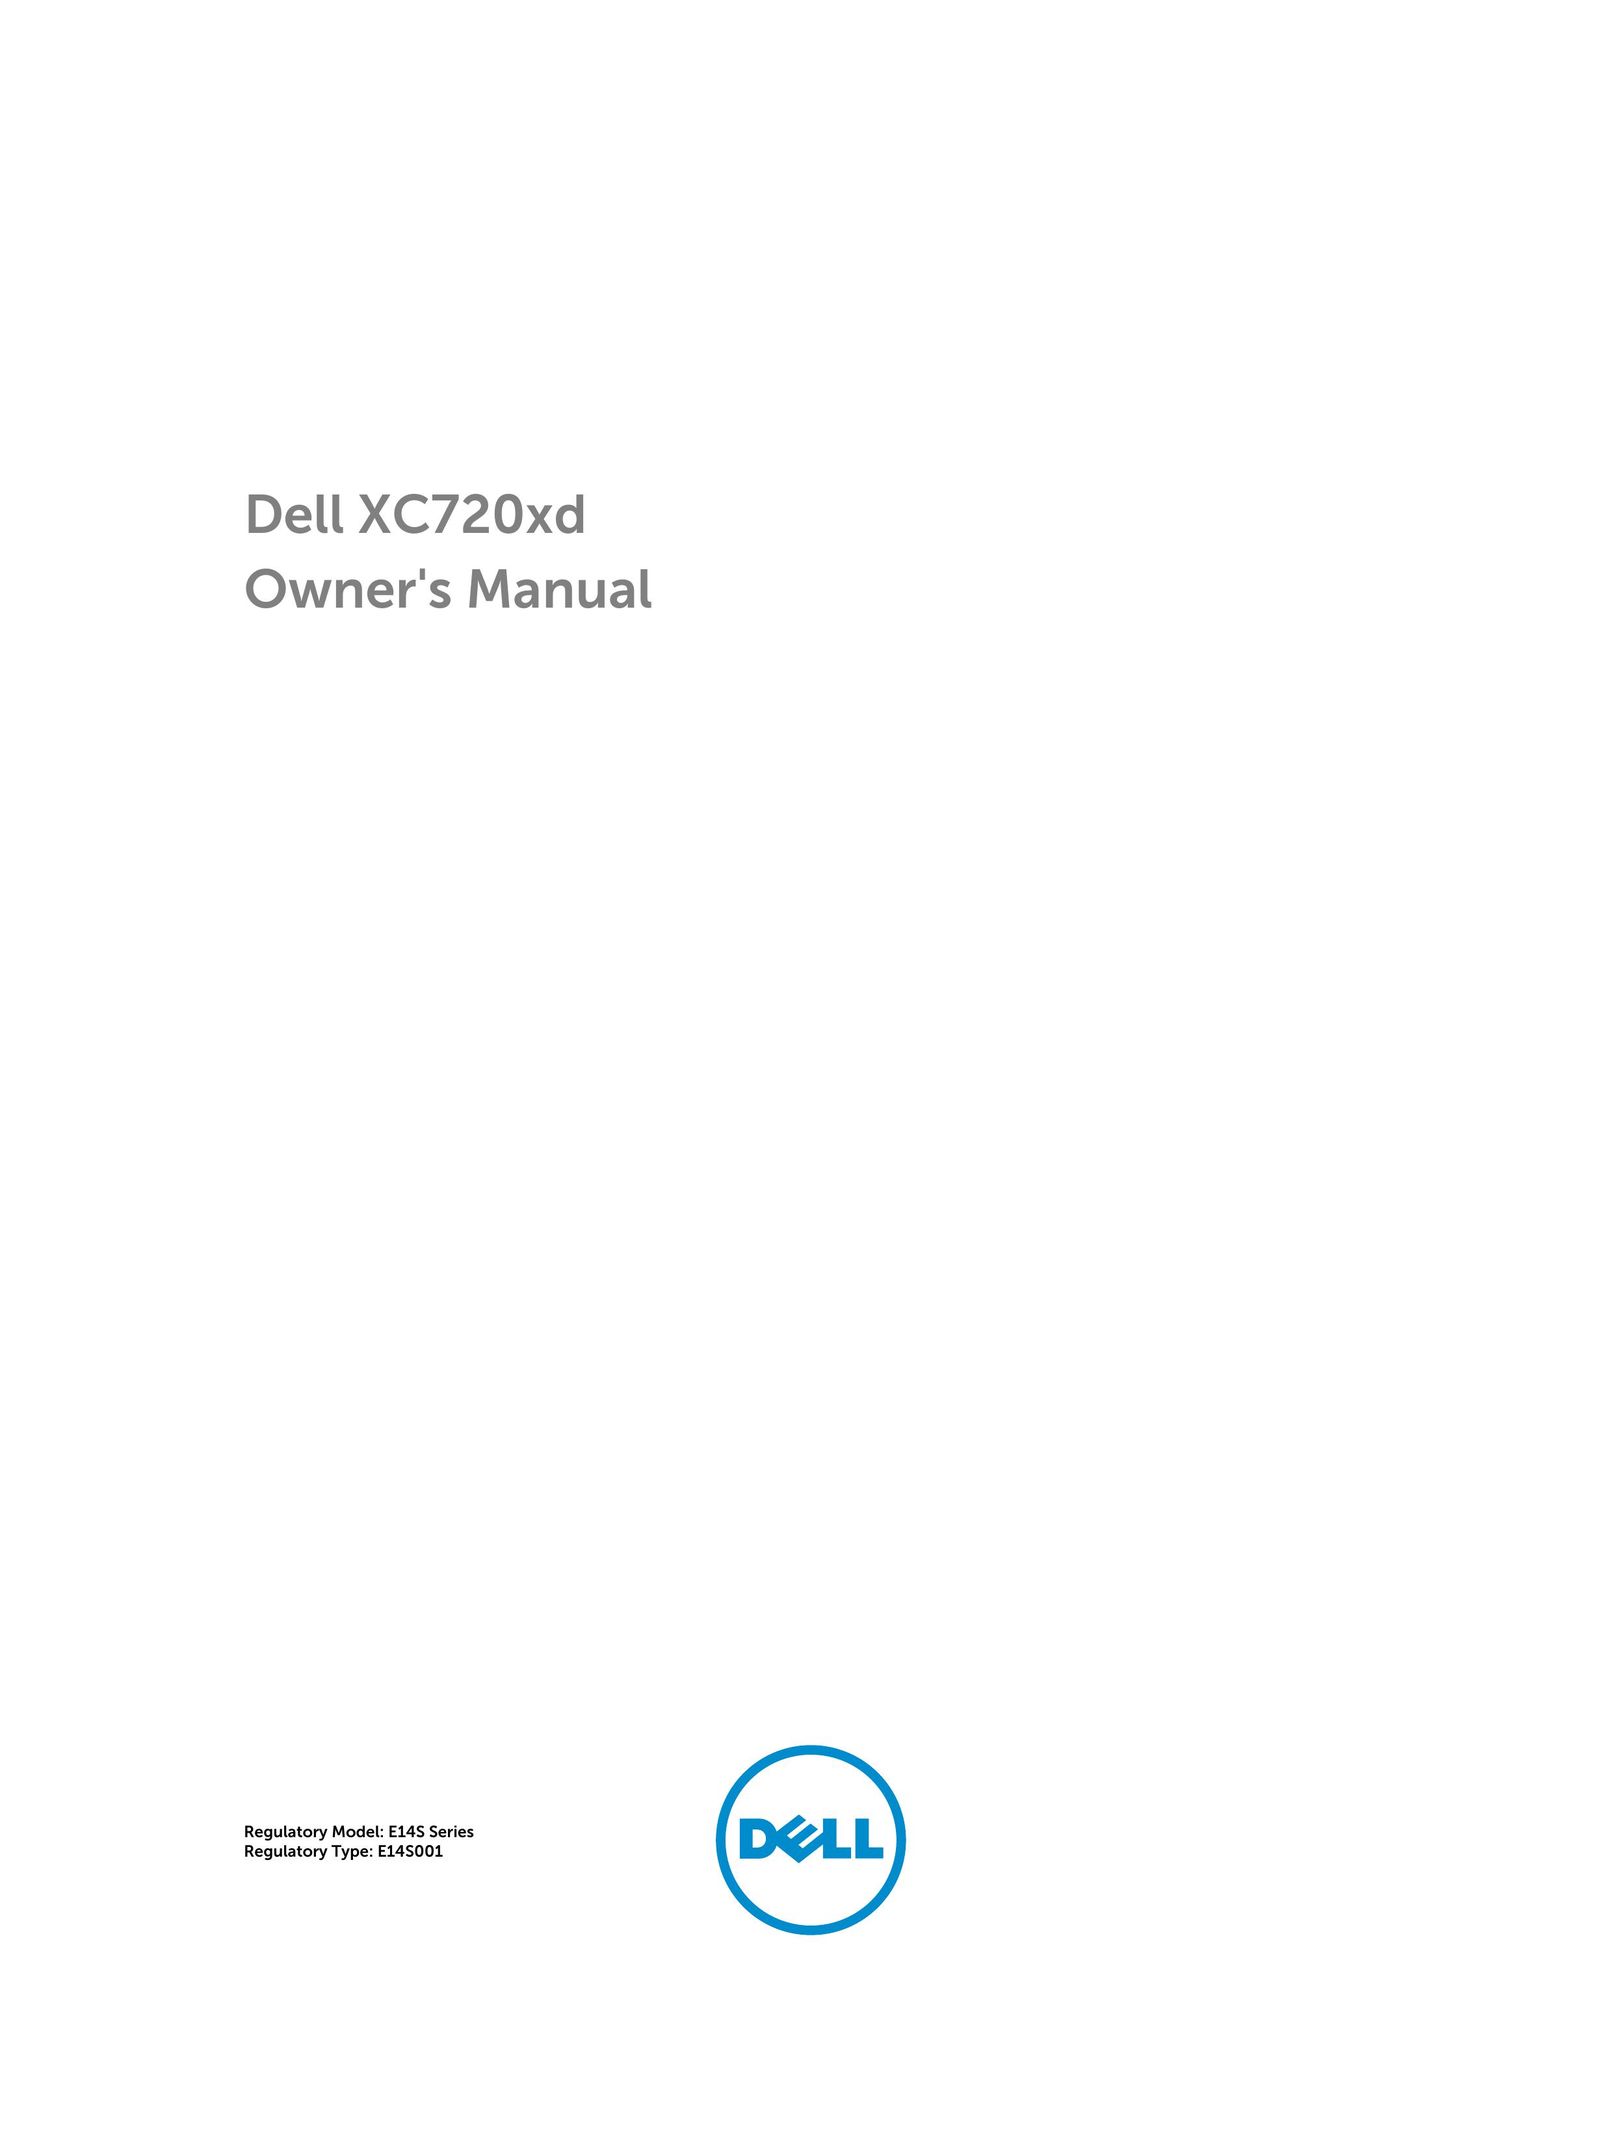 Dell E14S001 Time Clock User Manual